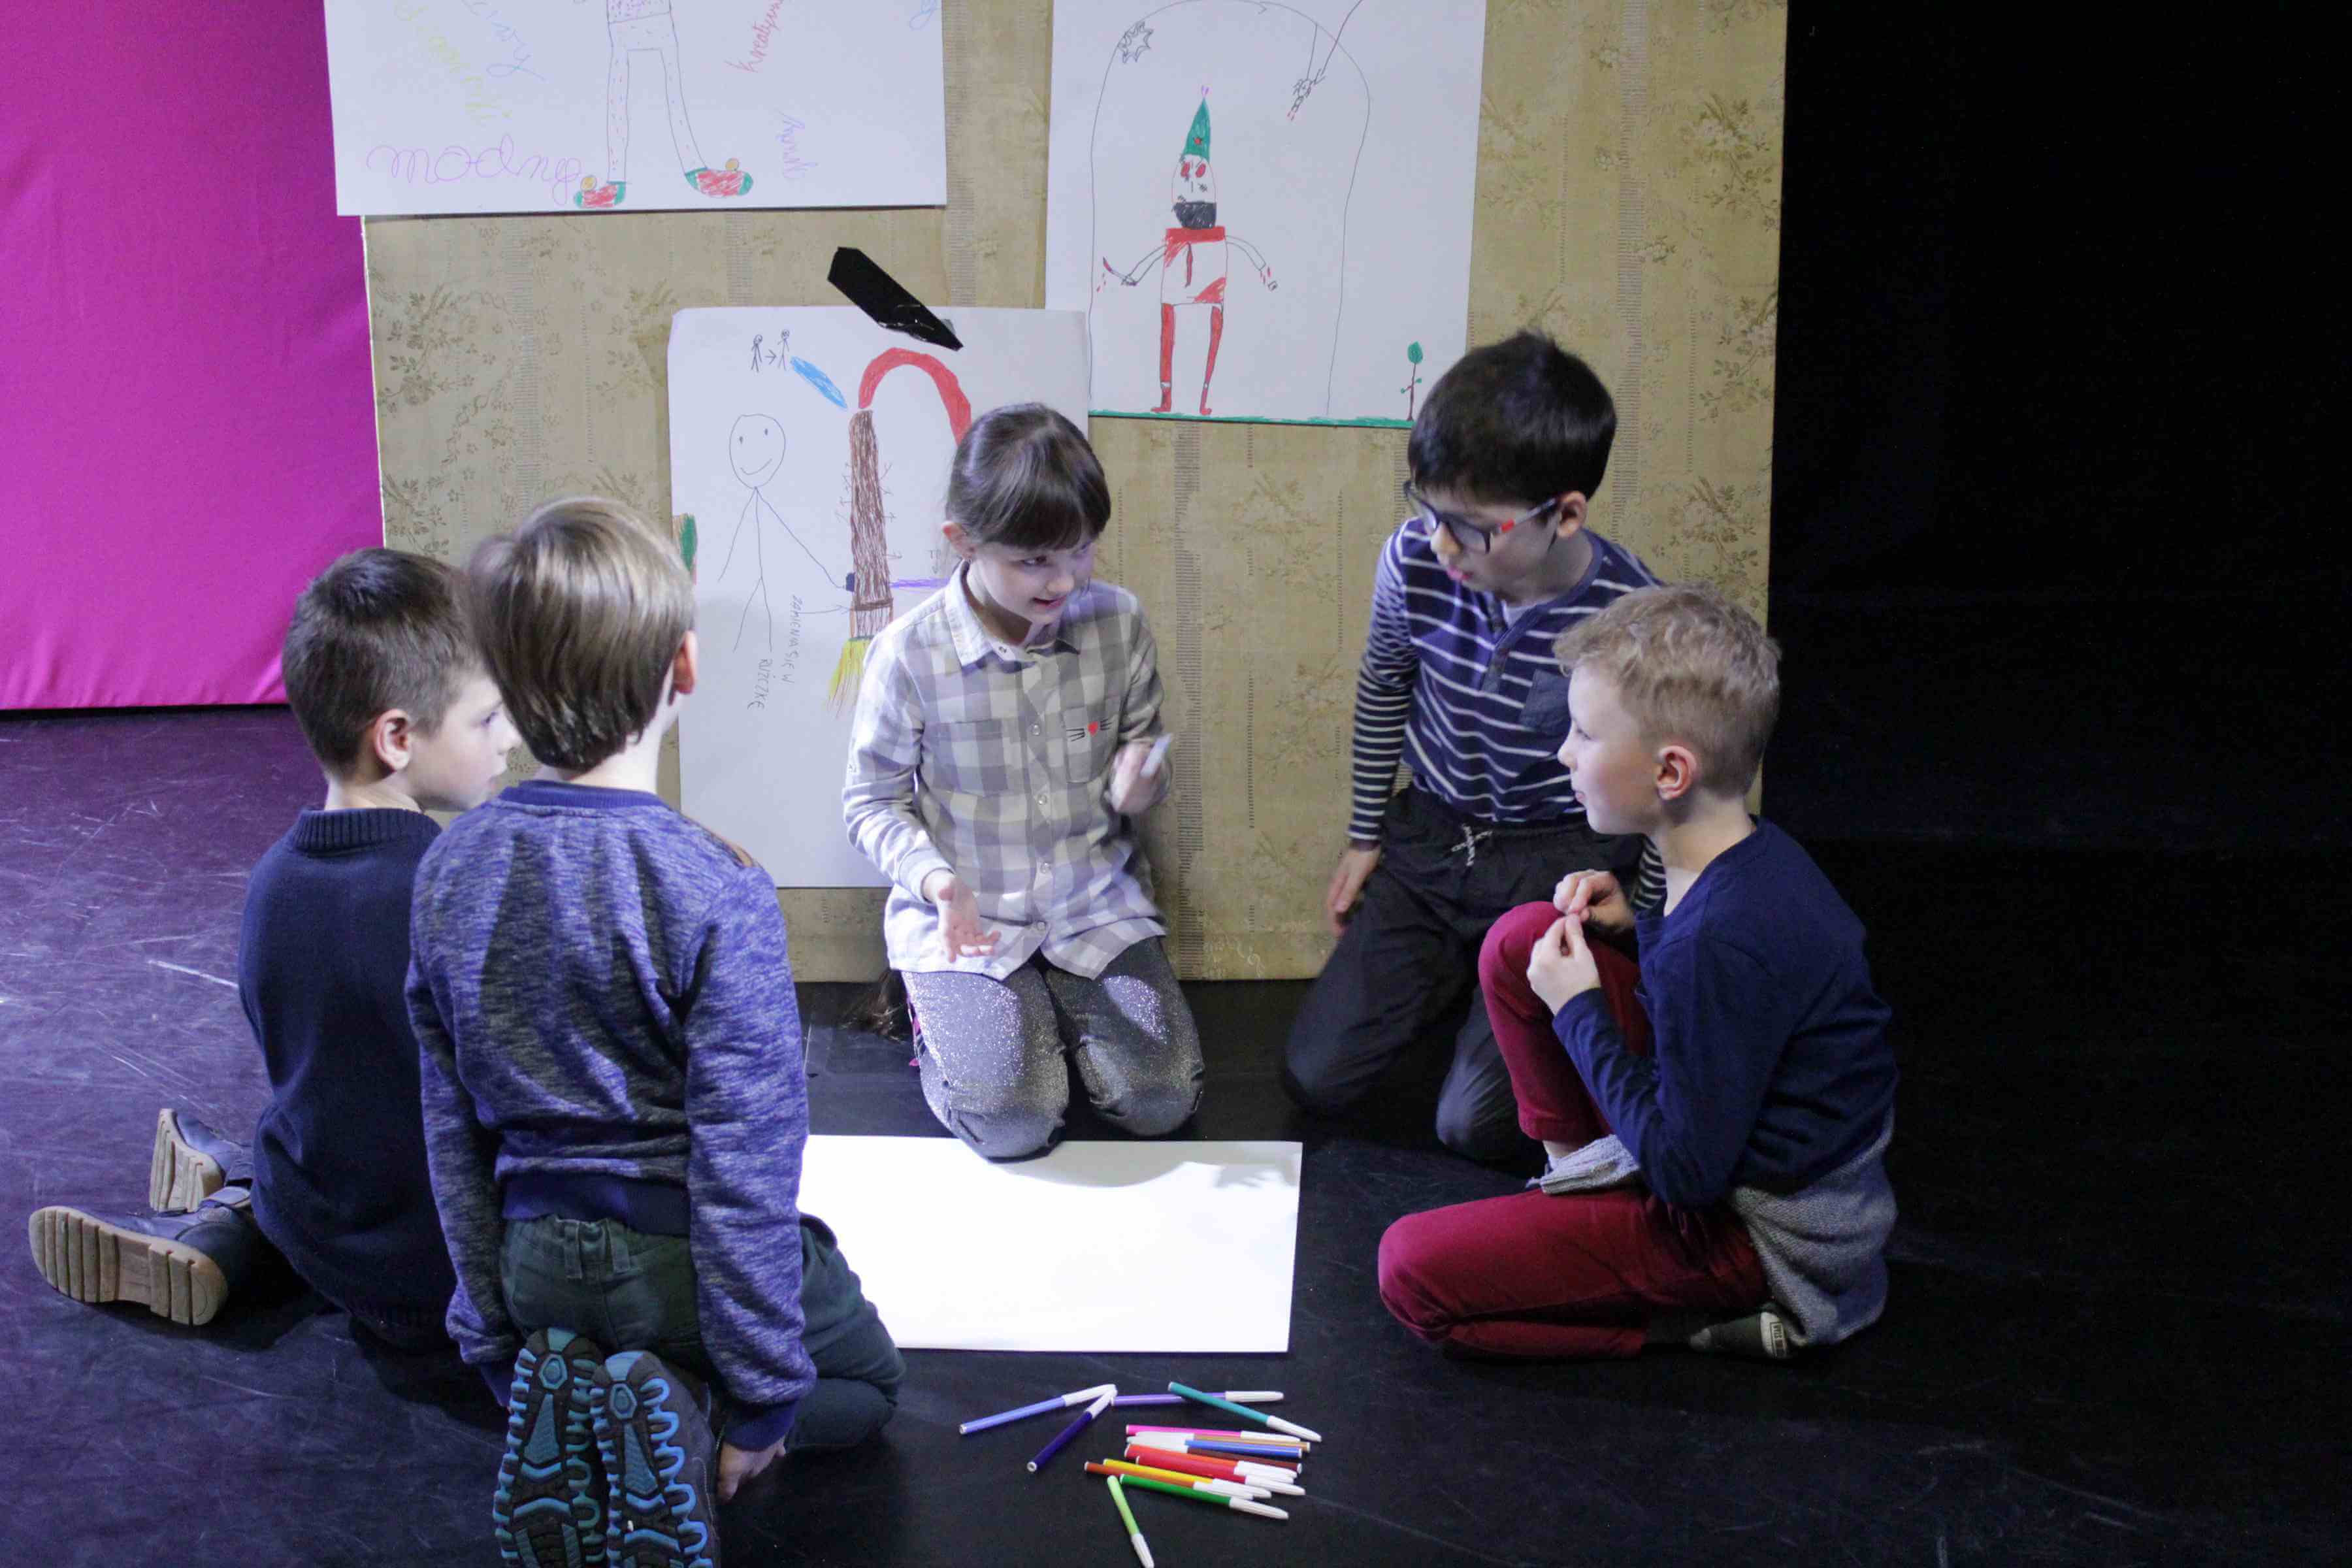 krupka dzieci siedzi na podłodze, obok nich leżą przygotowane kolorowe flamastry, między nimi na podłodze leży kartka papieru. w tle widaćpłytę drewnianą z pracami plastycznymi innych dzieci, czarna podłoga, po lewej stronie różowe tło, po prawej czarne